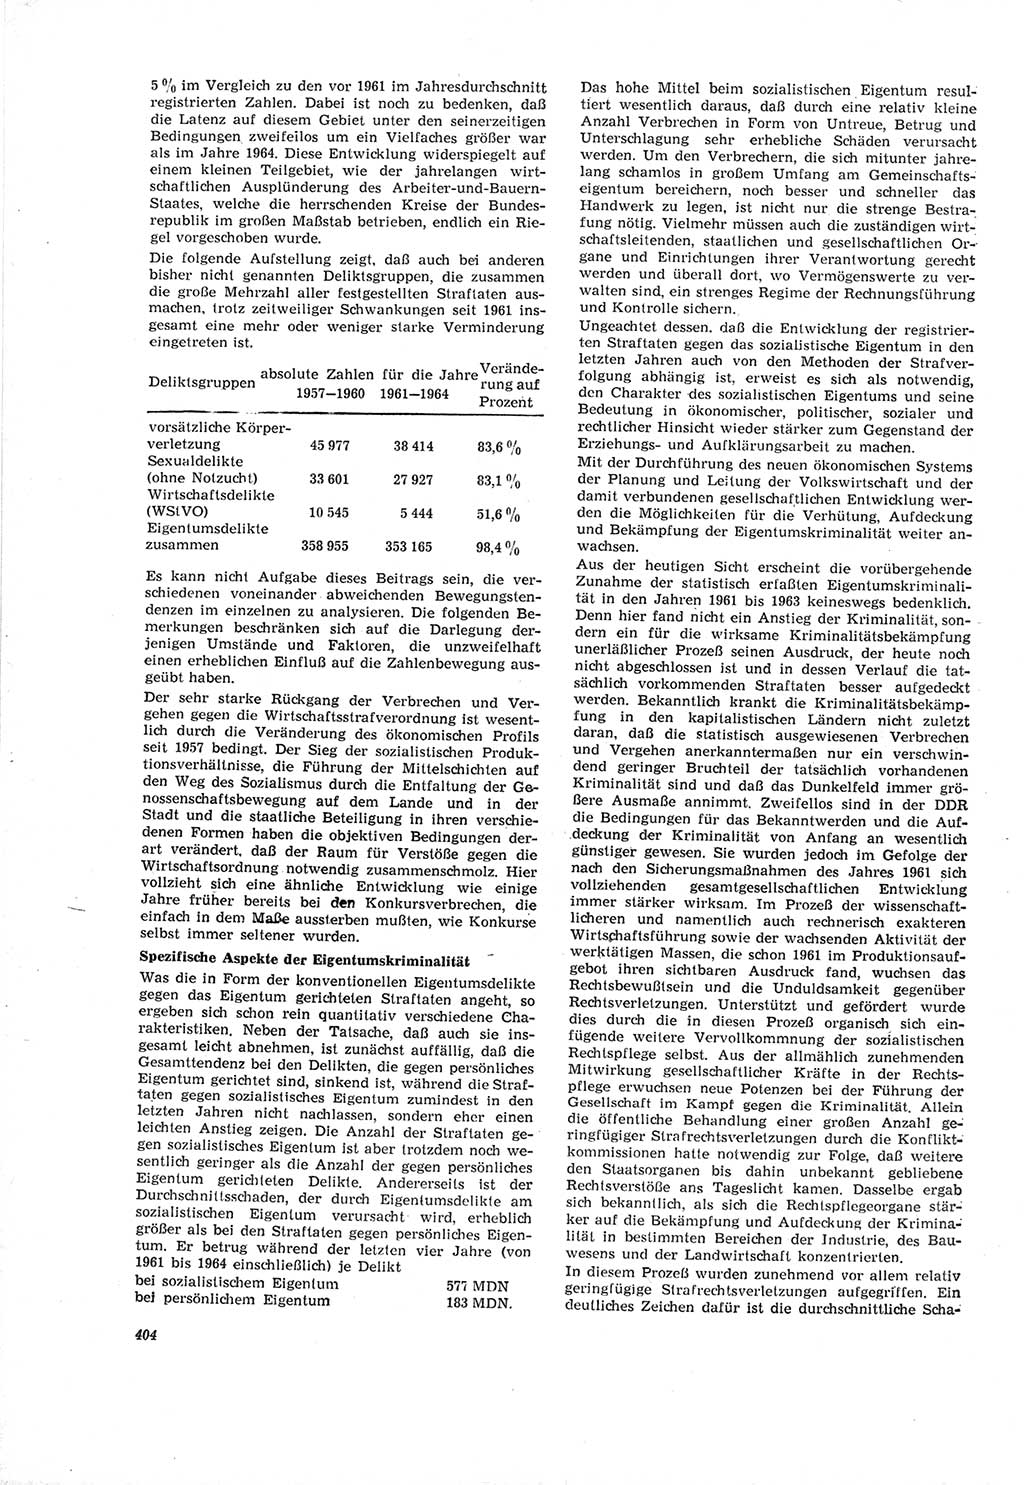 Neue Justiz (NJ), Zeitschrift für Recht und Rechtswissenschaft [Deutsche Demokratische Republik (DDR)], 19. Jahrgang 1965, Seite 404 (NJ DDR 1965, S. 404)